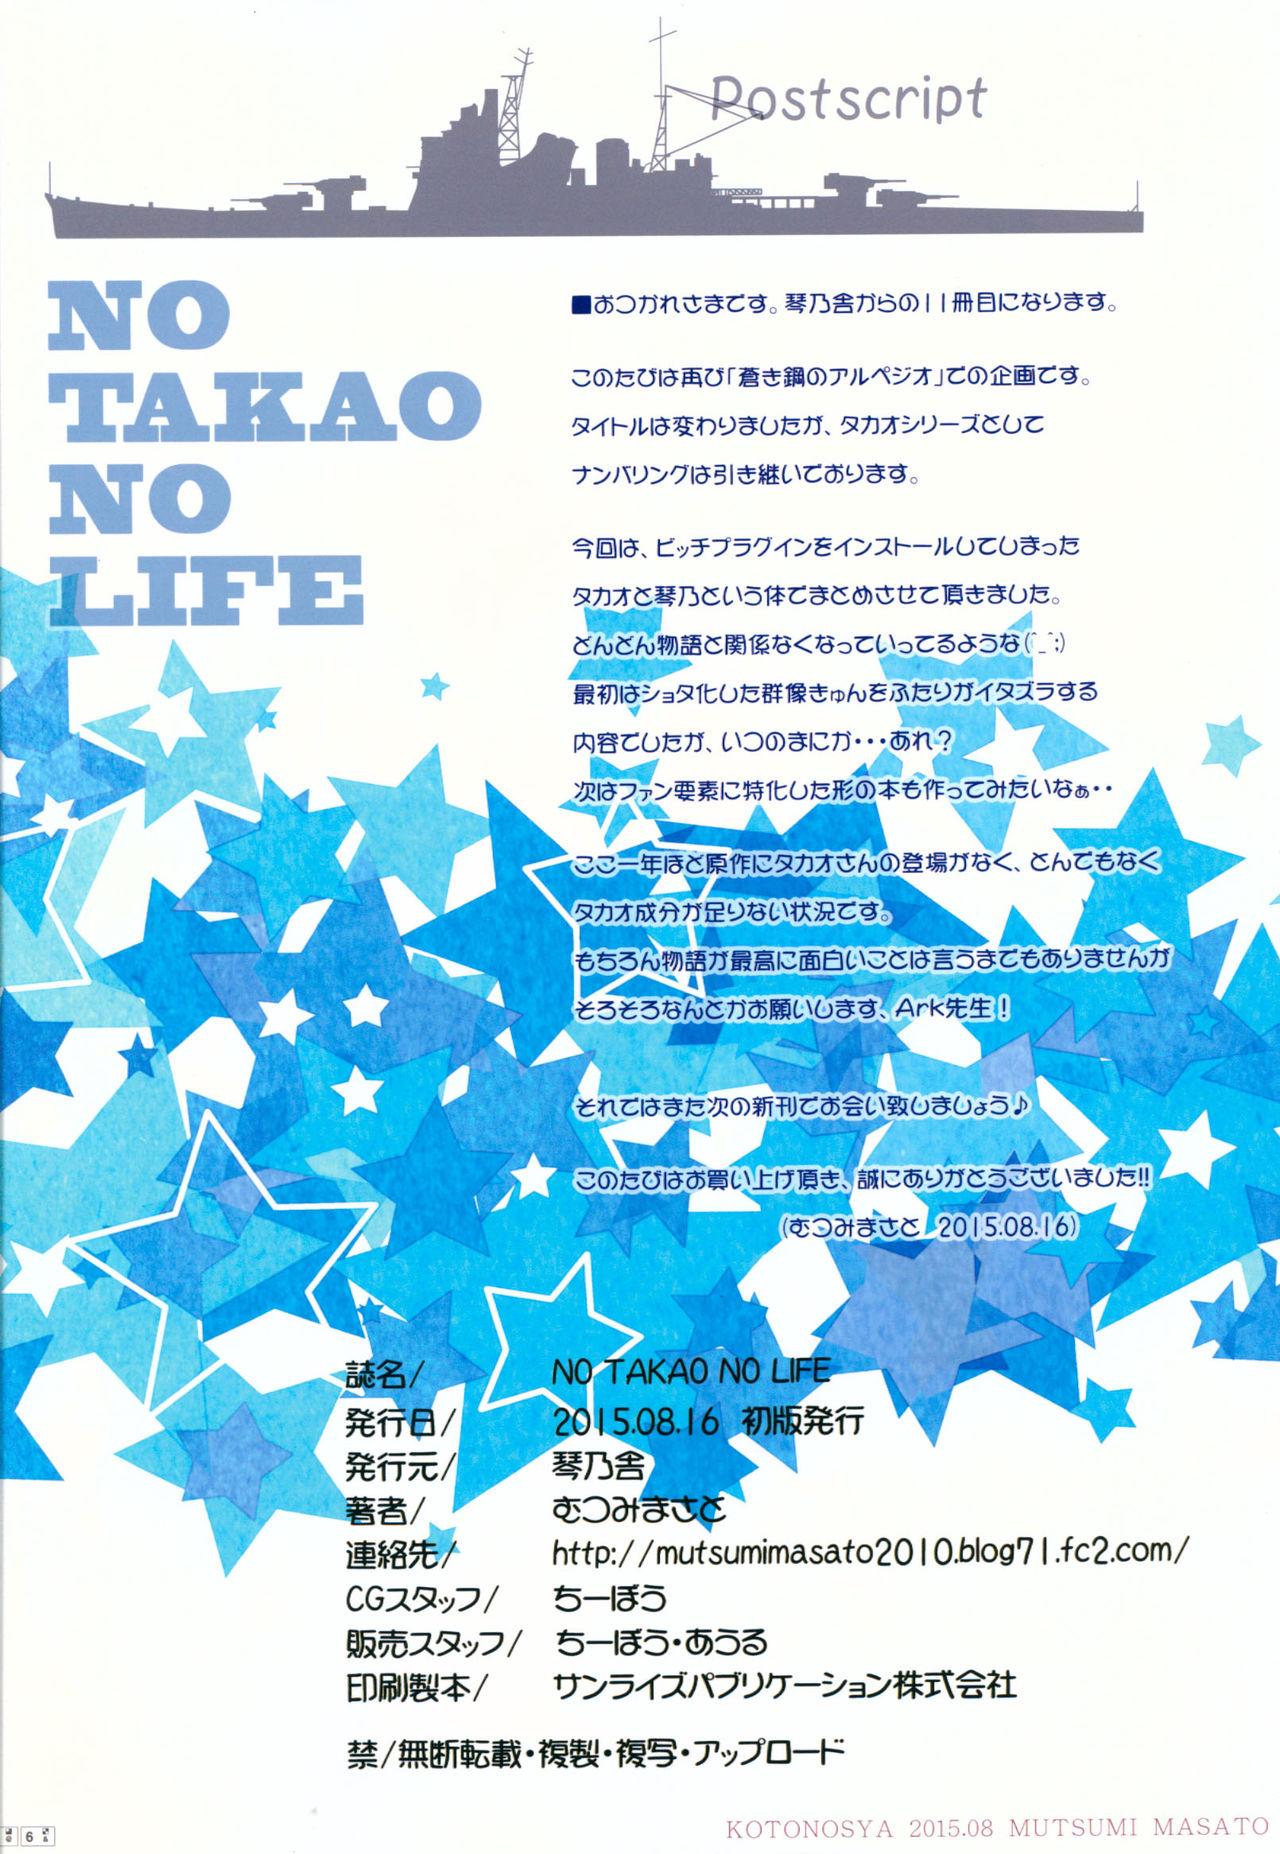 NO TAKAO NO LIFE 25